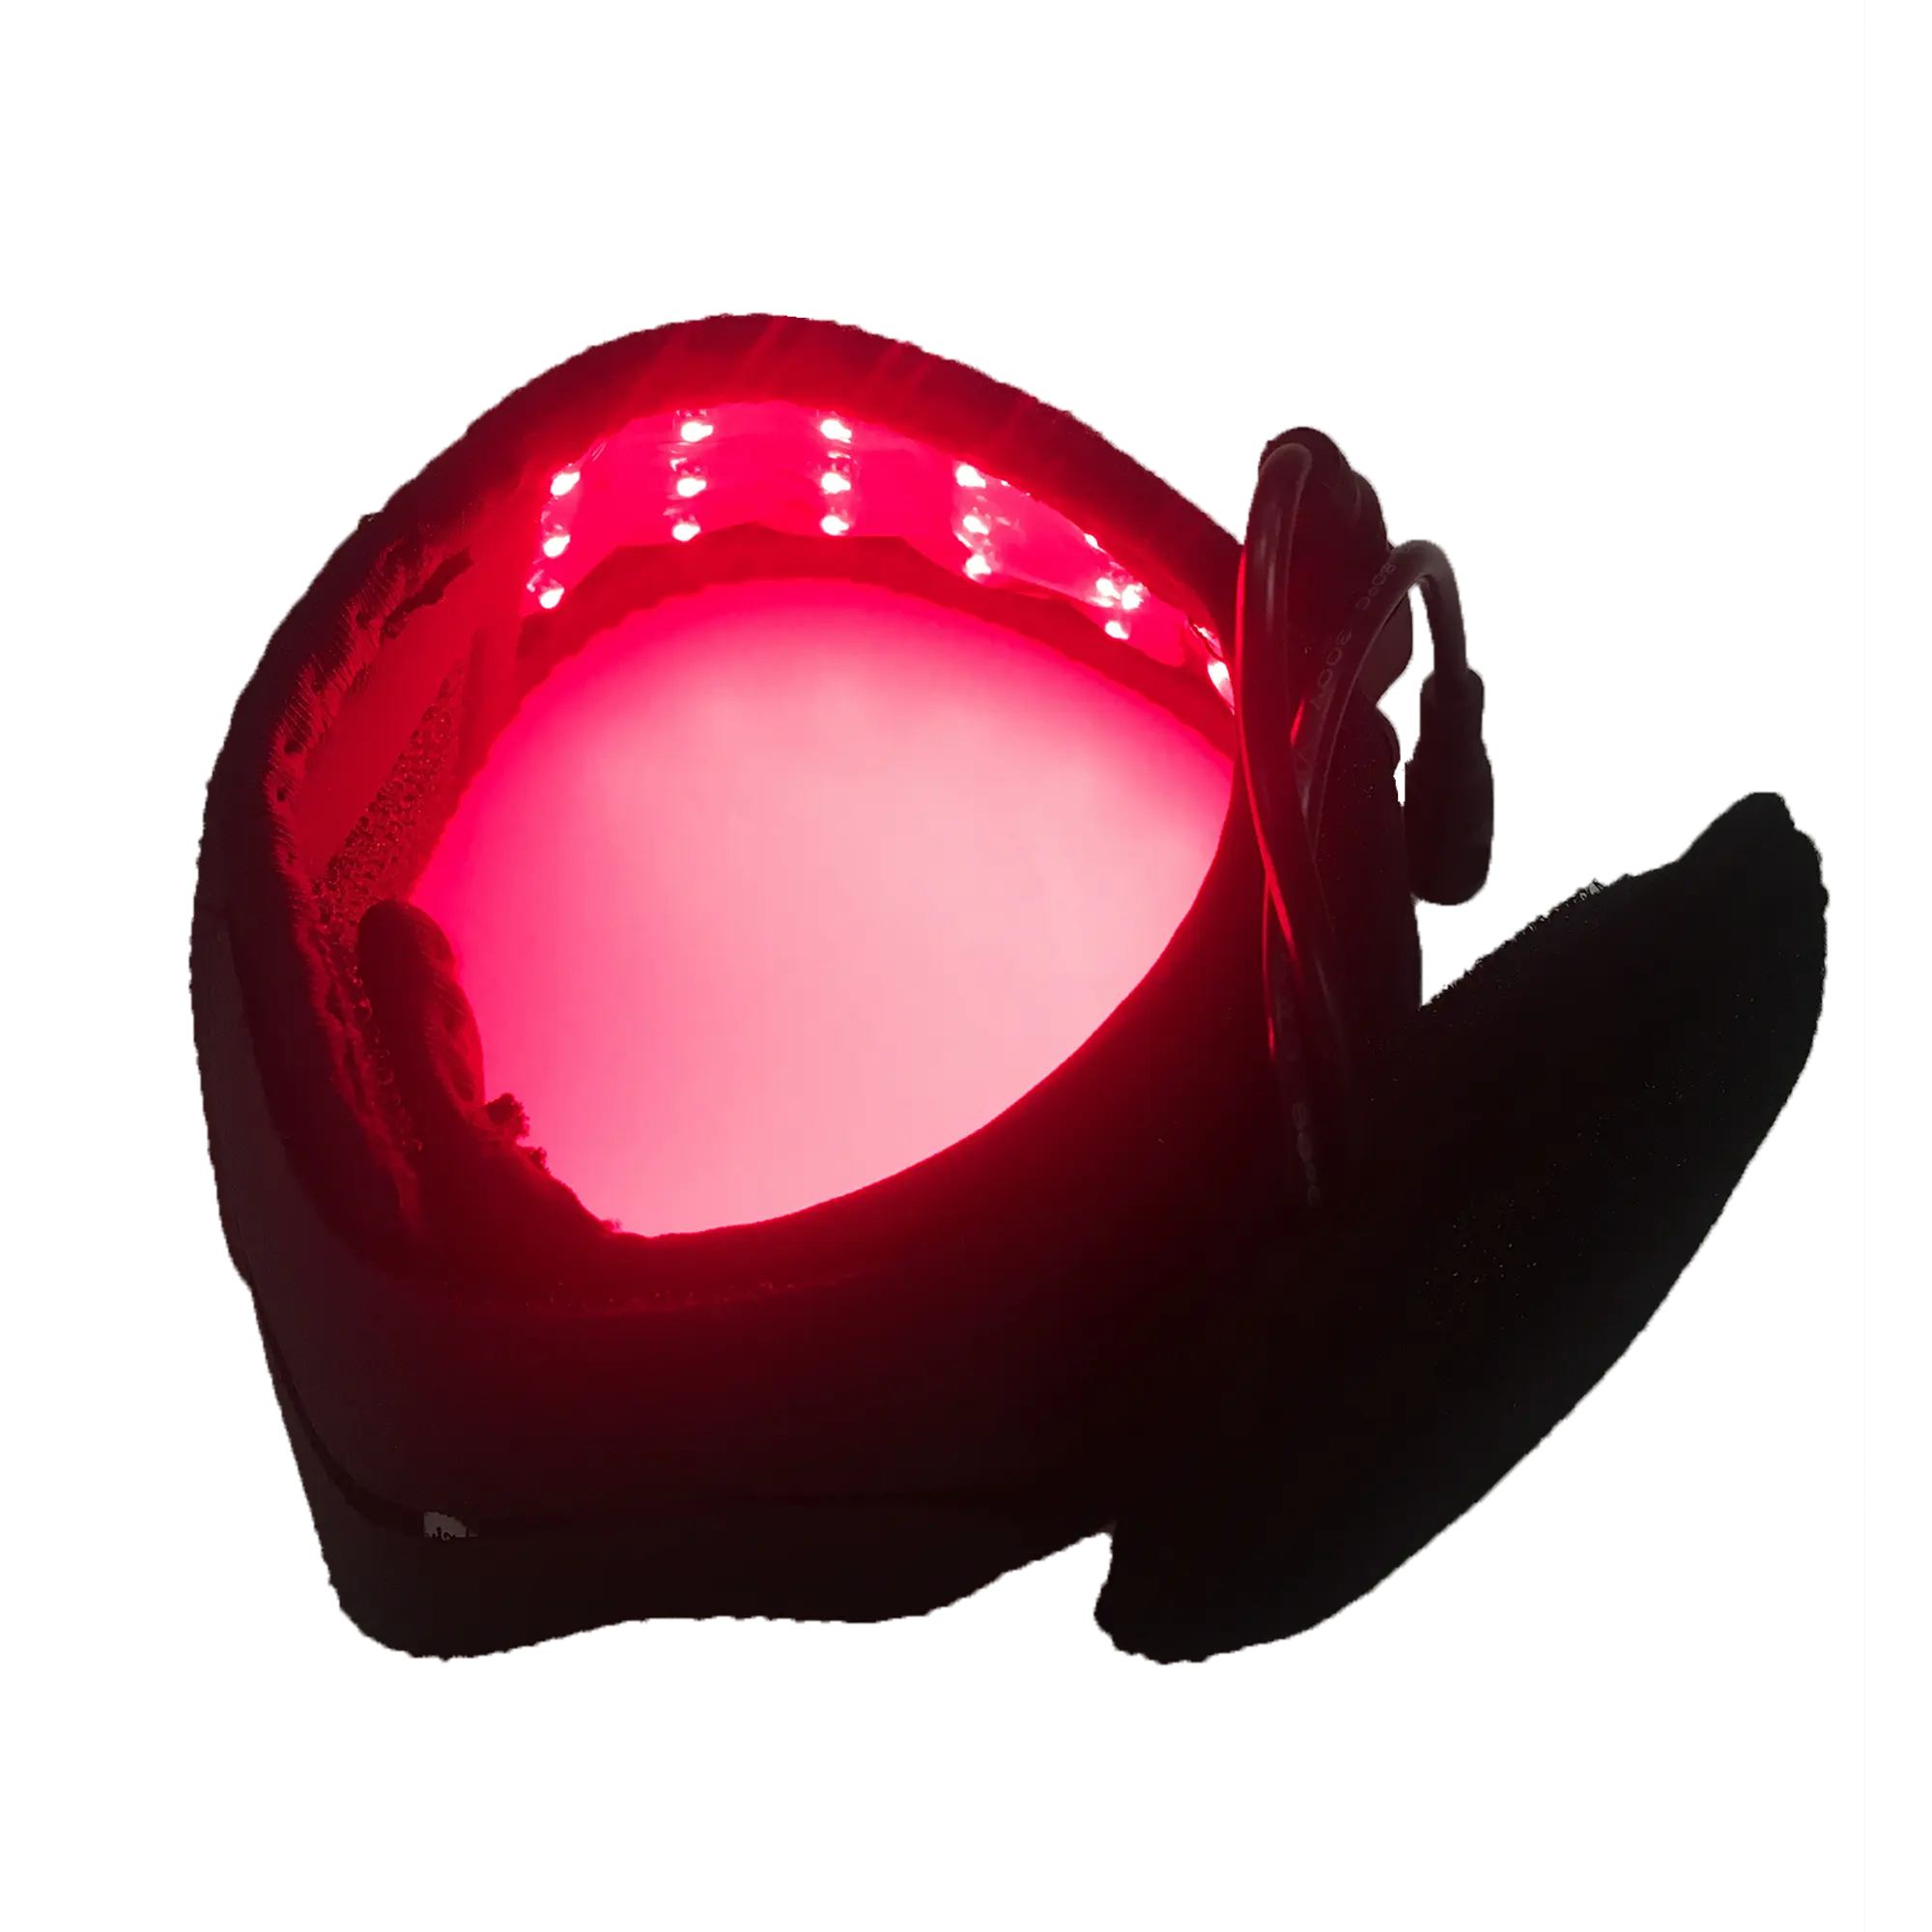 SINOCO อุปกรณ์บำบัดแสงอินฟราเรดสีแดง PDT,บูตให้แสงสว่างล้นเพื่อควบคุมการสมานแผลน้ำตาลในเลือดไฟอาบแดด